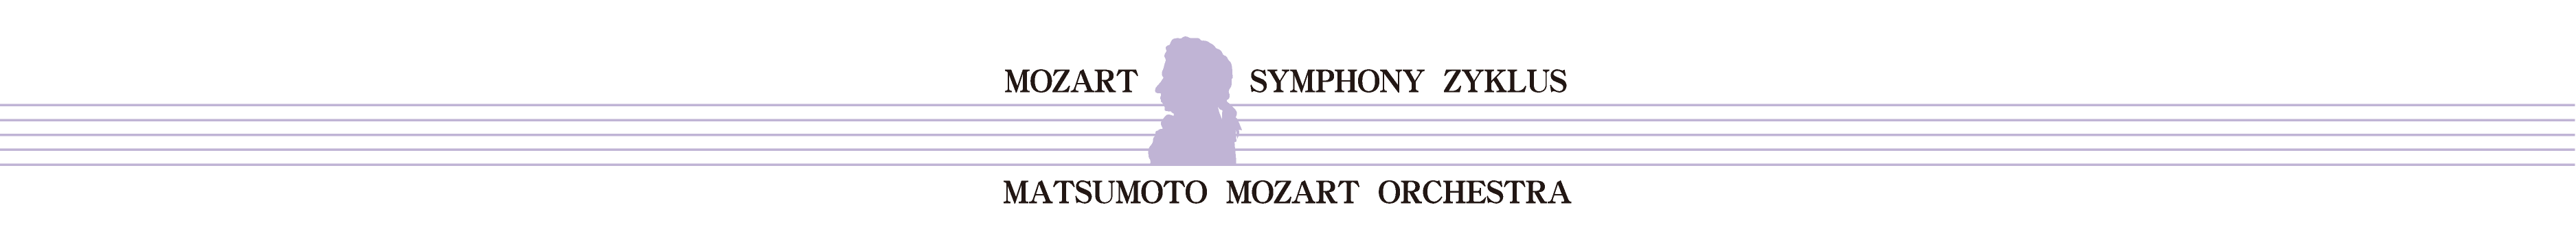 第20回 モーツァルト交響曲・全曲演奏会